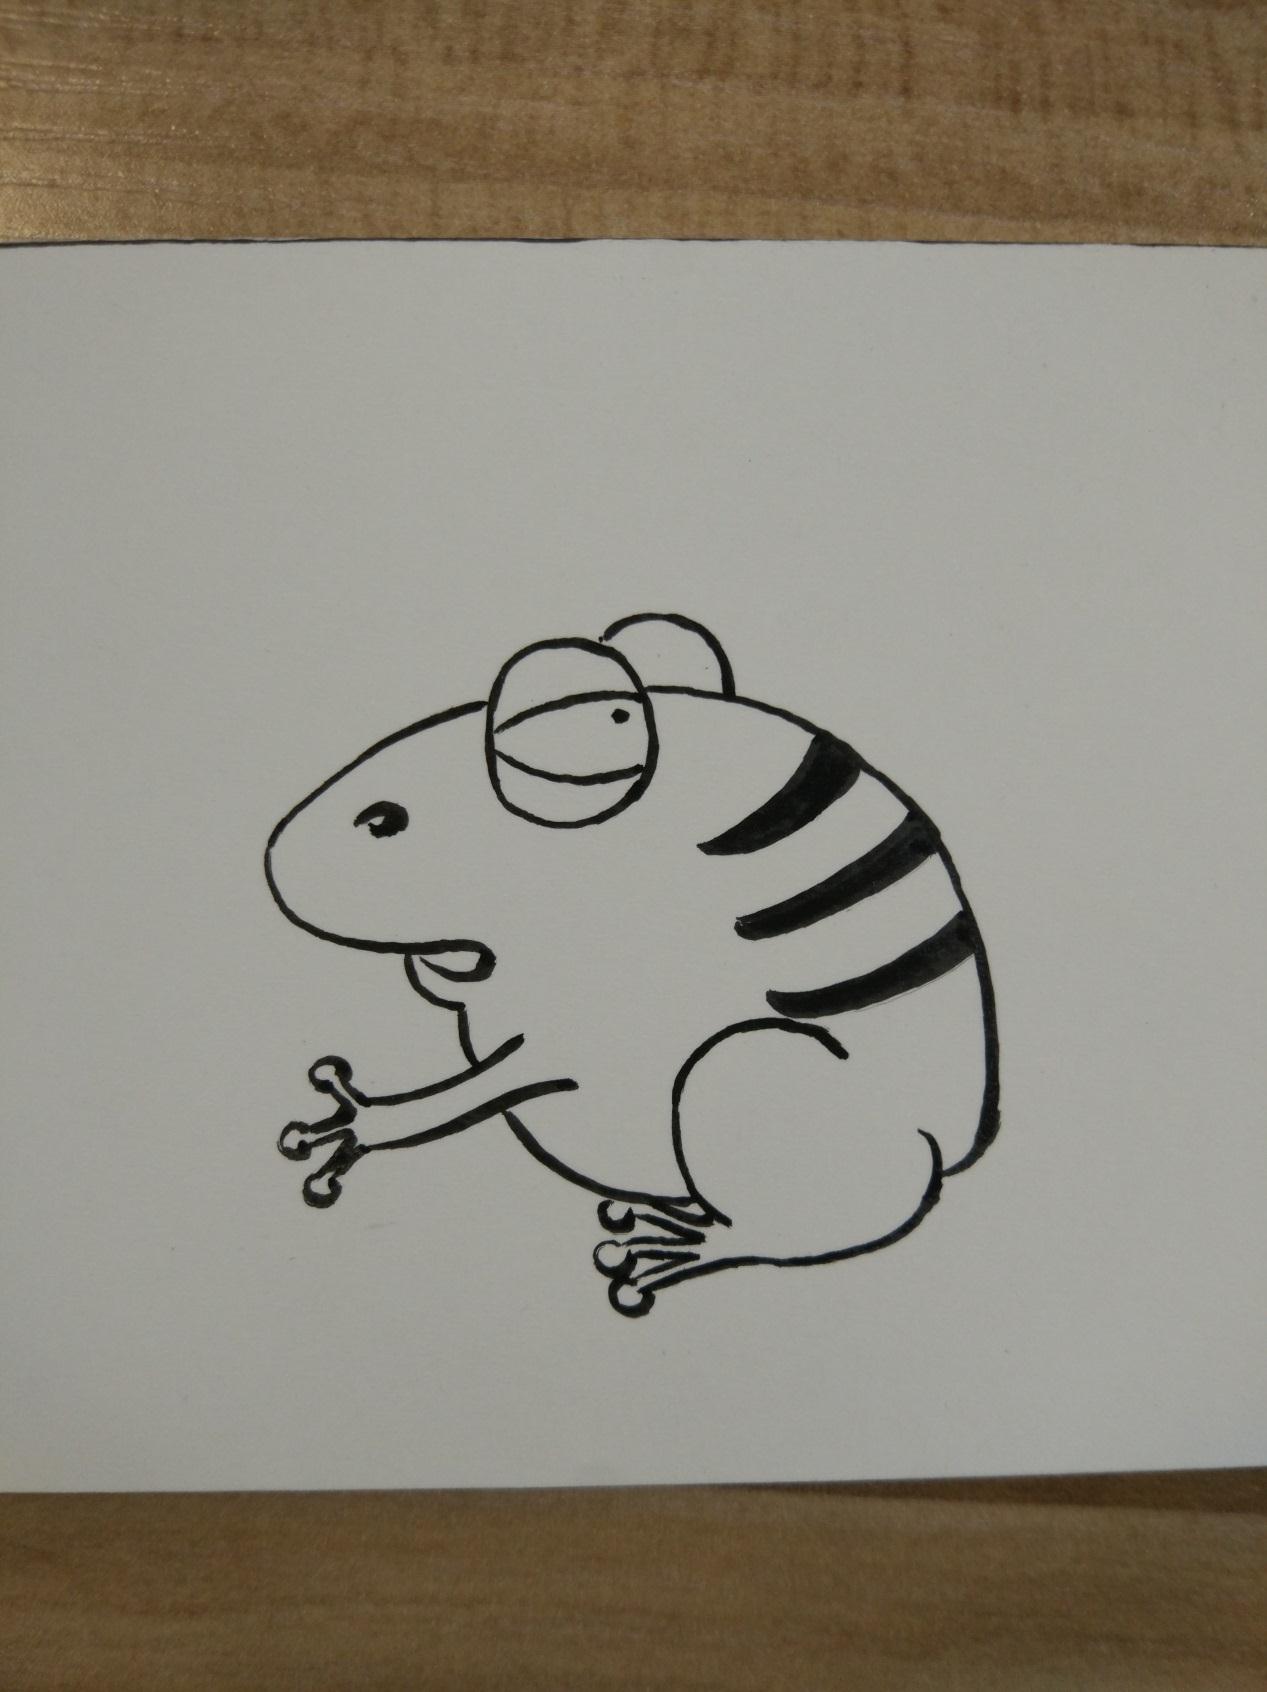 水彩动物手绘插画系列之小青蛙彩绘画步骤图解